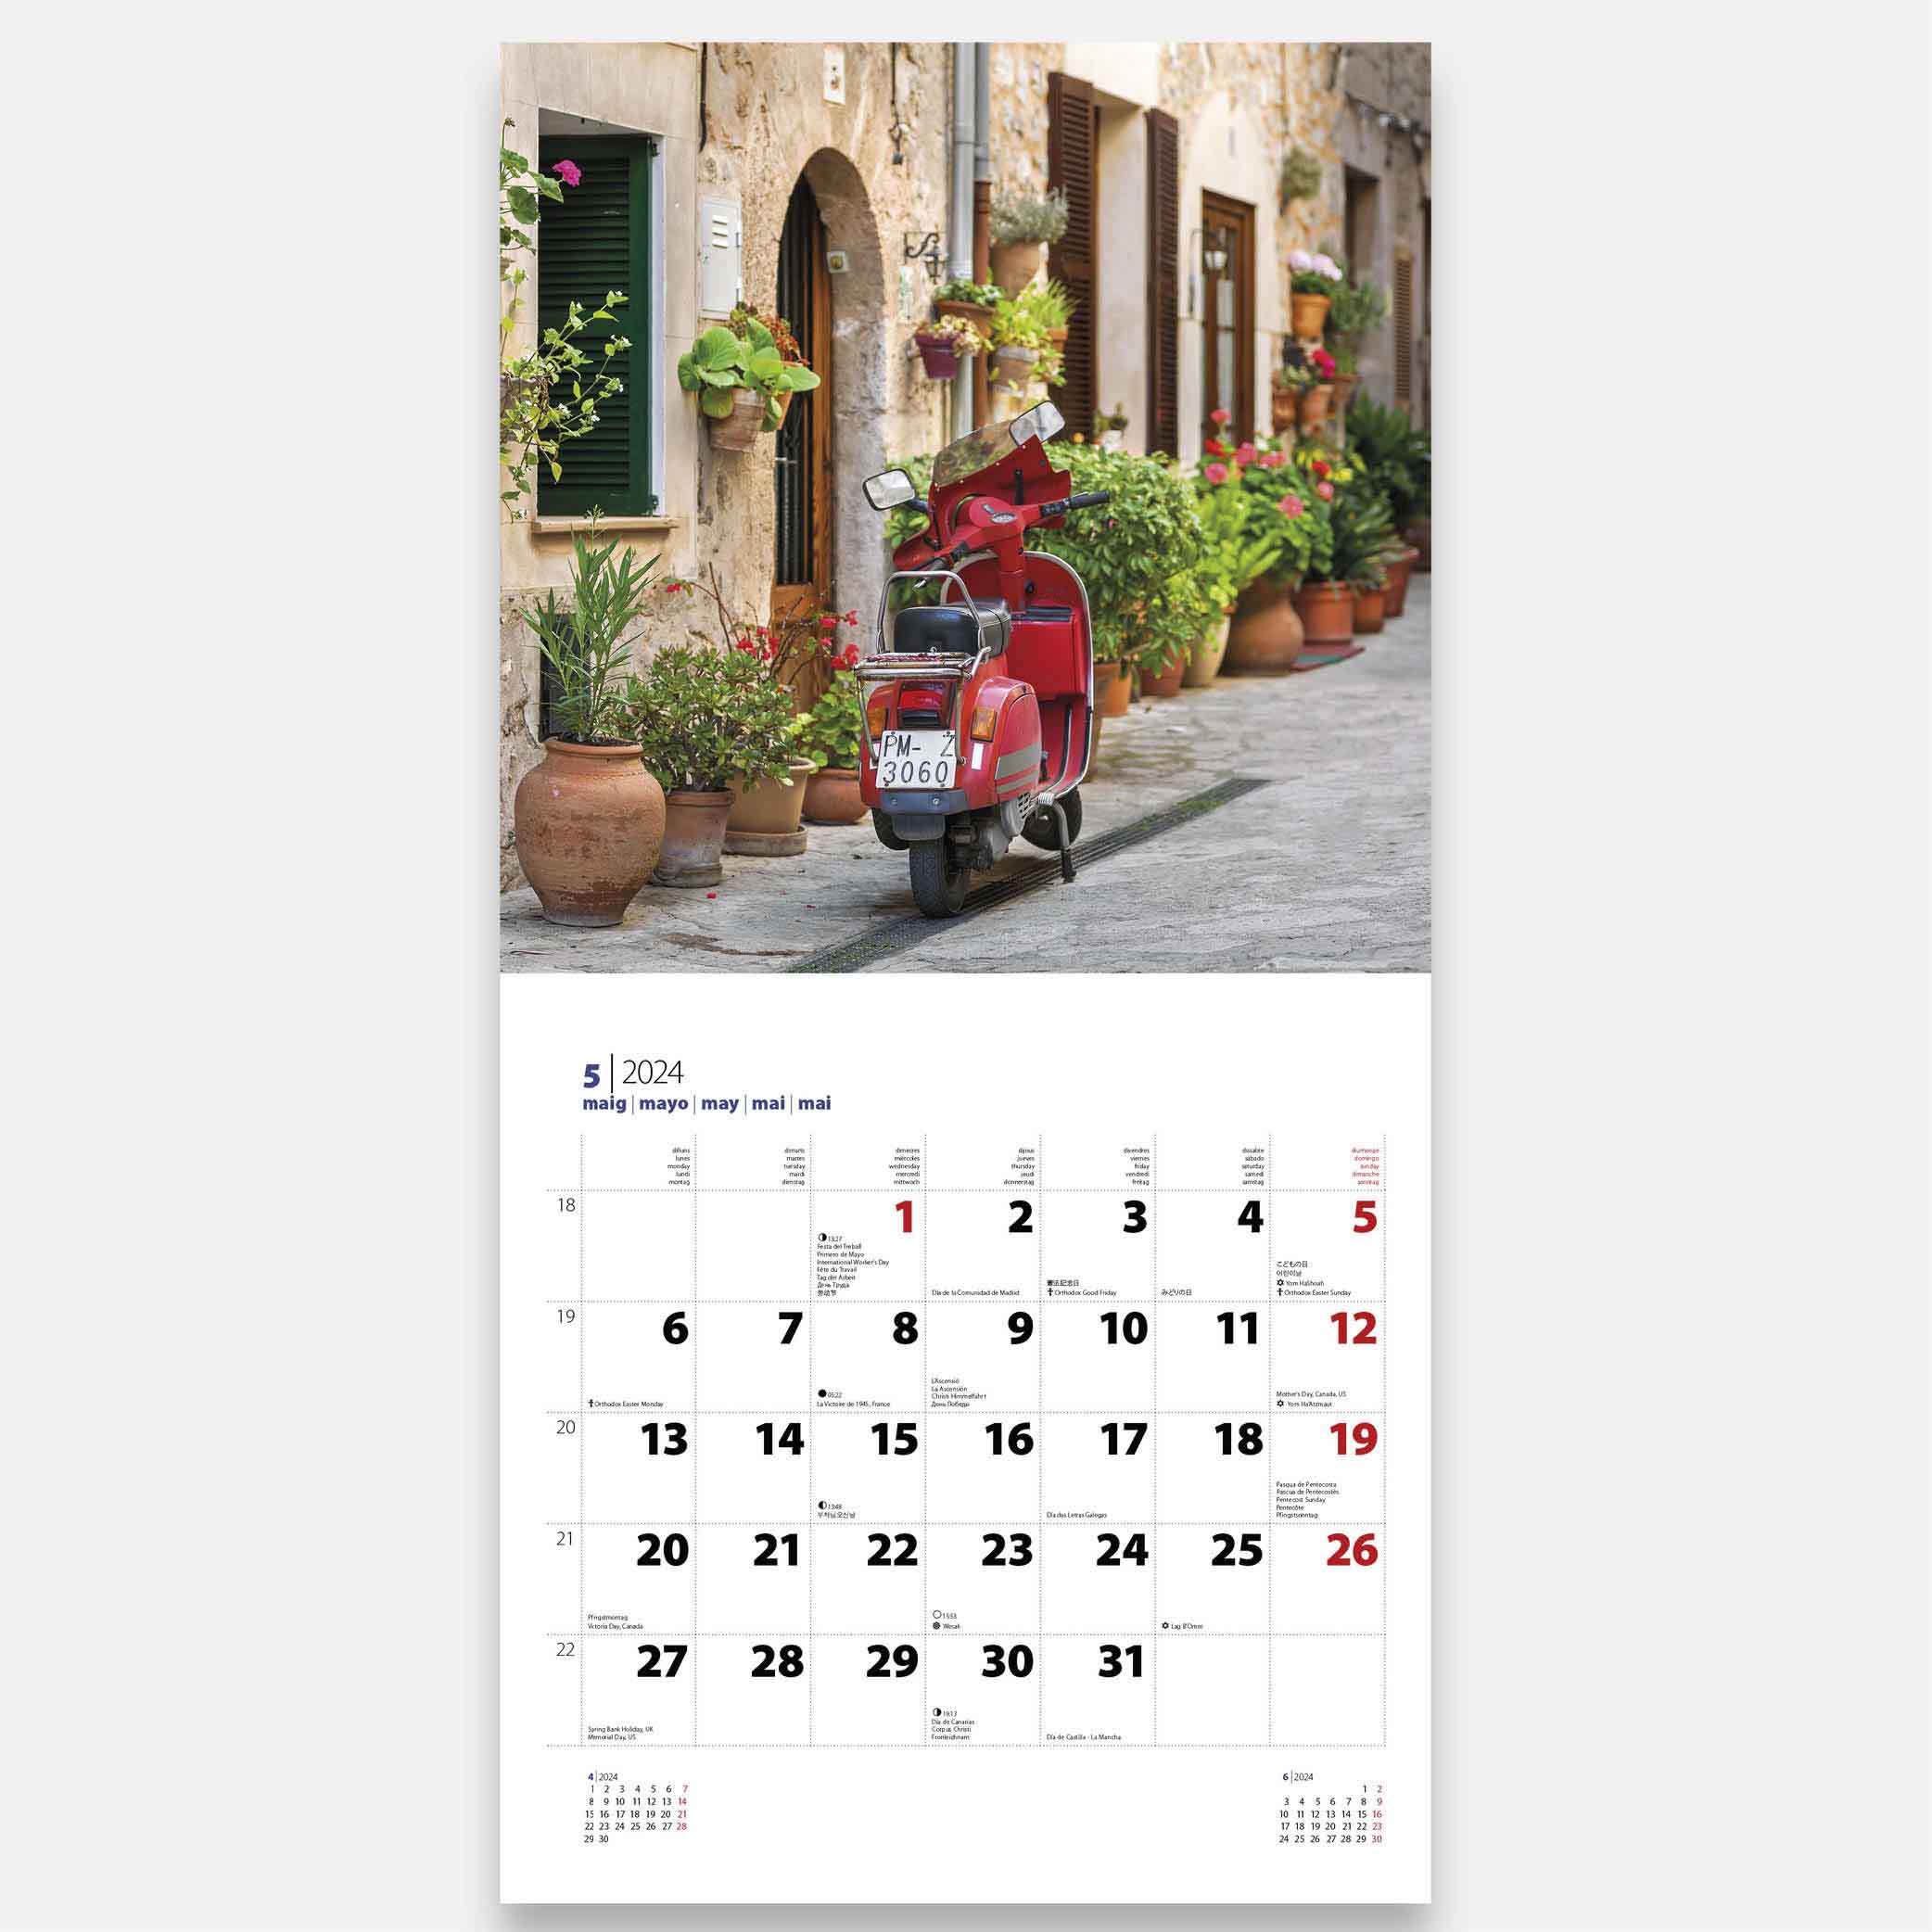 Calendario 2024 Mallorca 24mag13 calendario pared 2024 mallorca